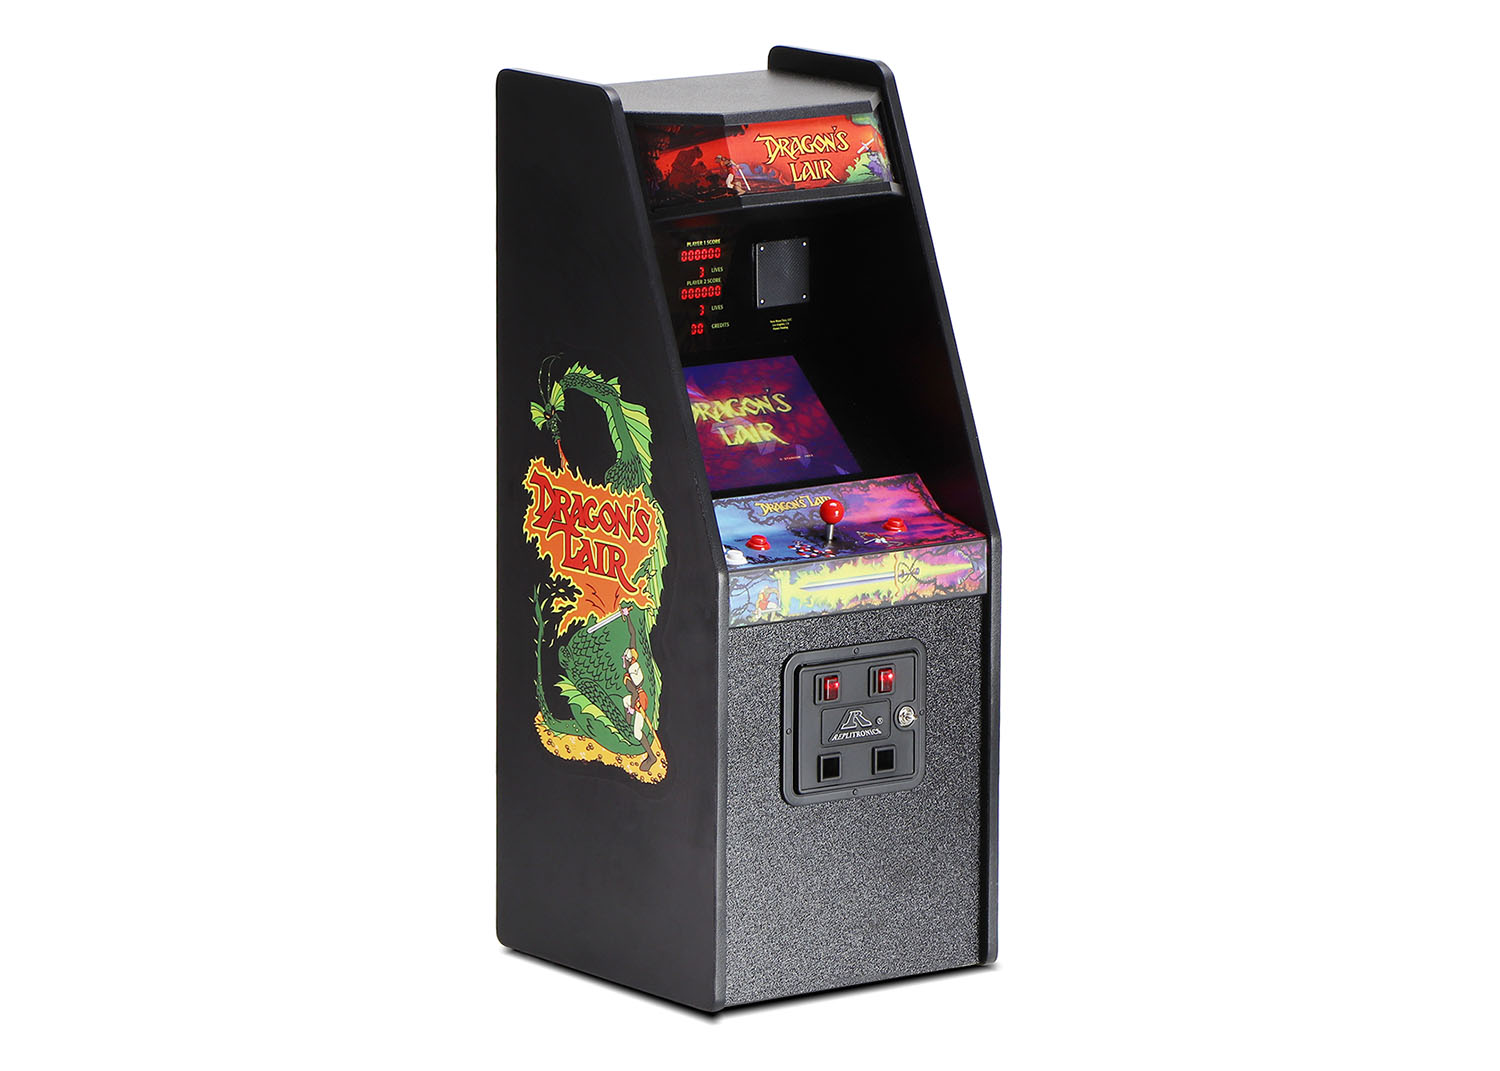 dragons lair 3 arcade ratings